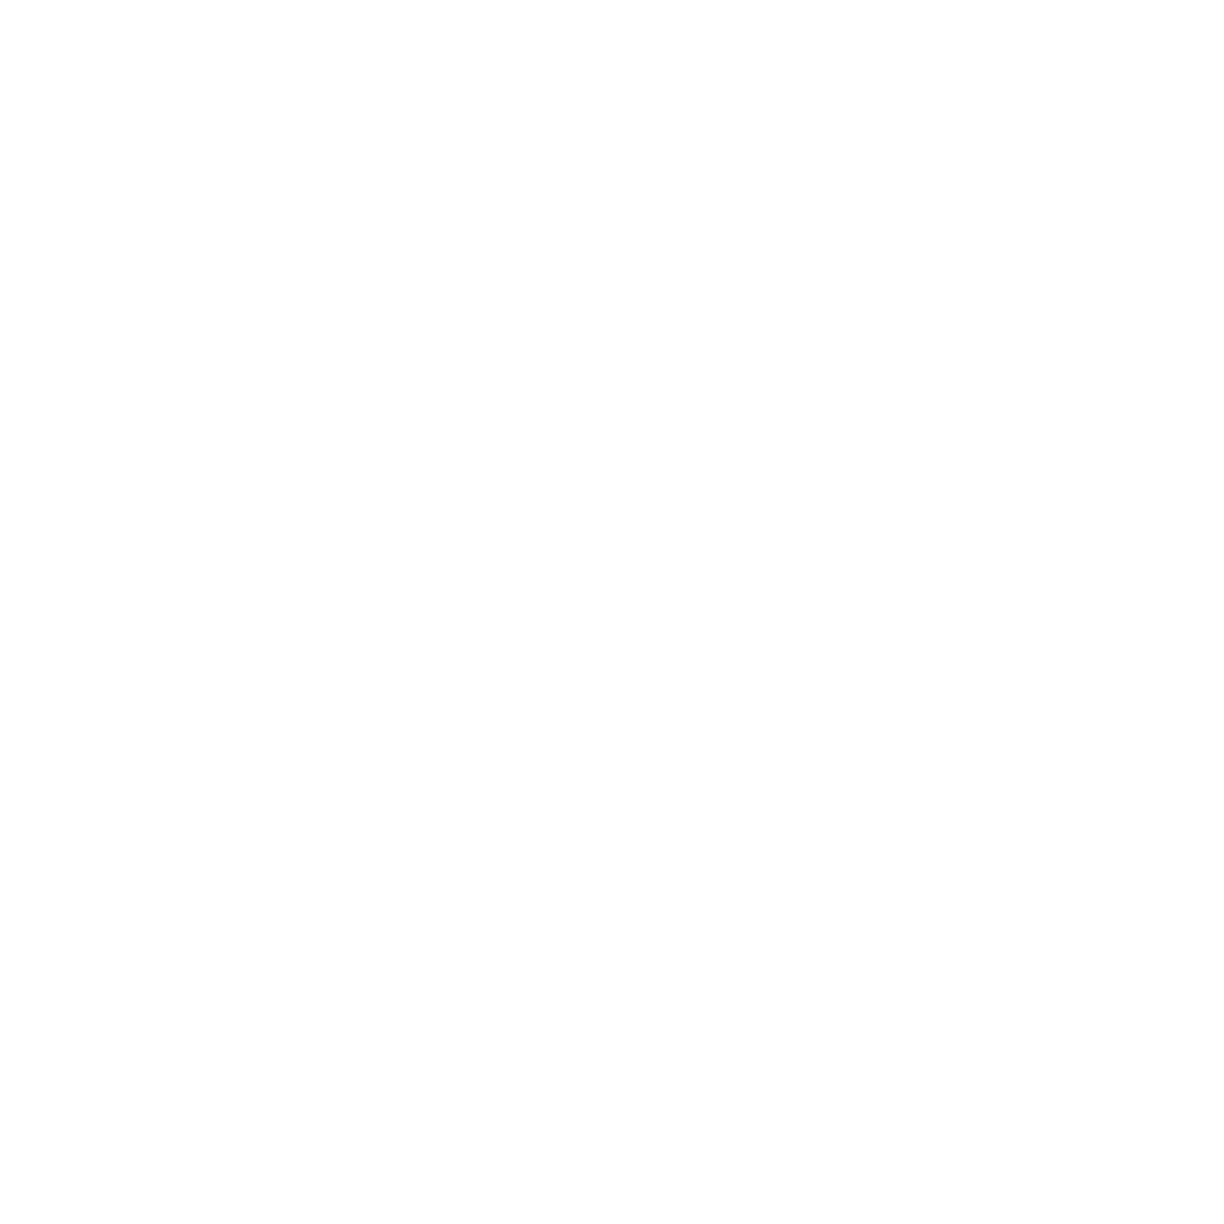 FFFEST - Celebrating Women in Film